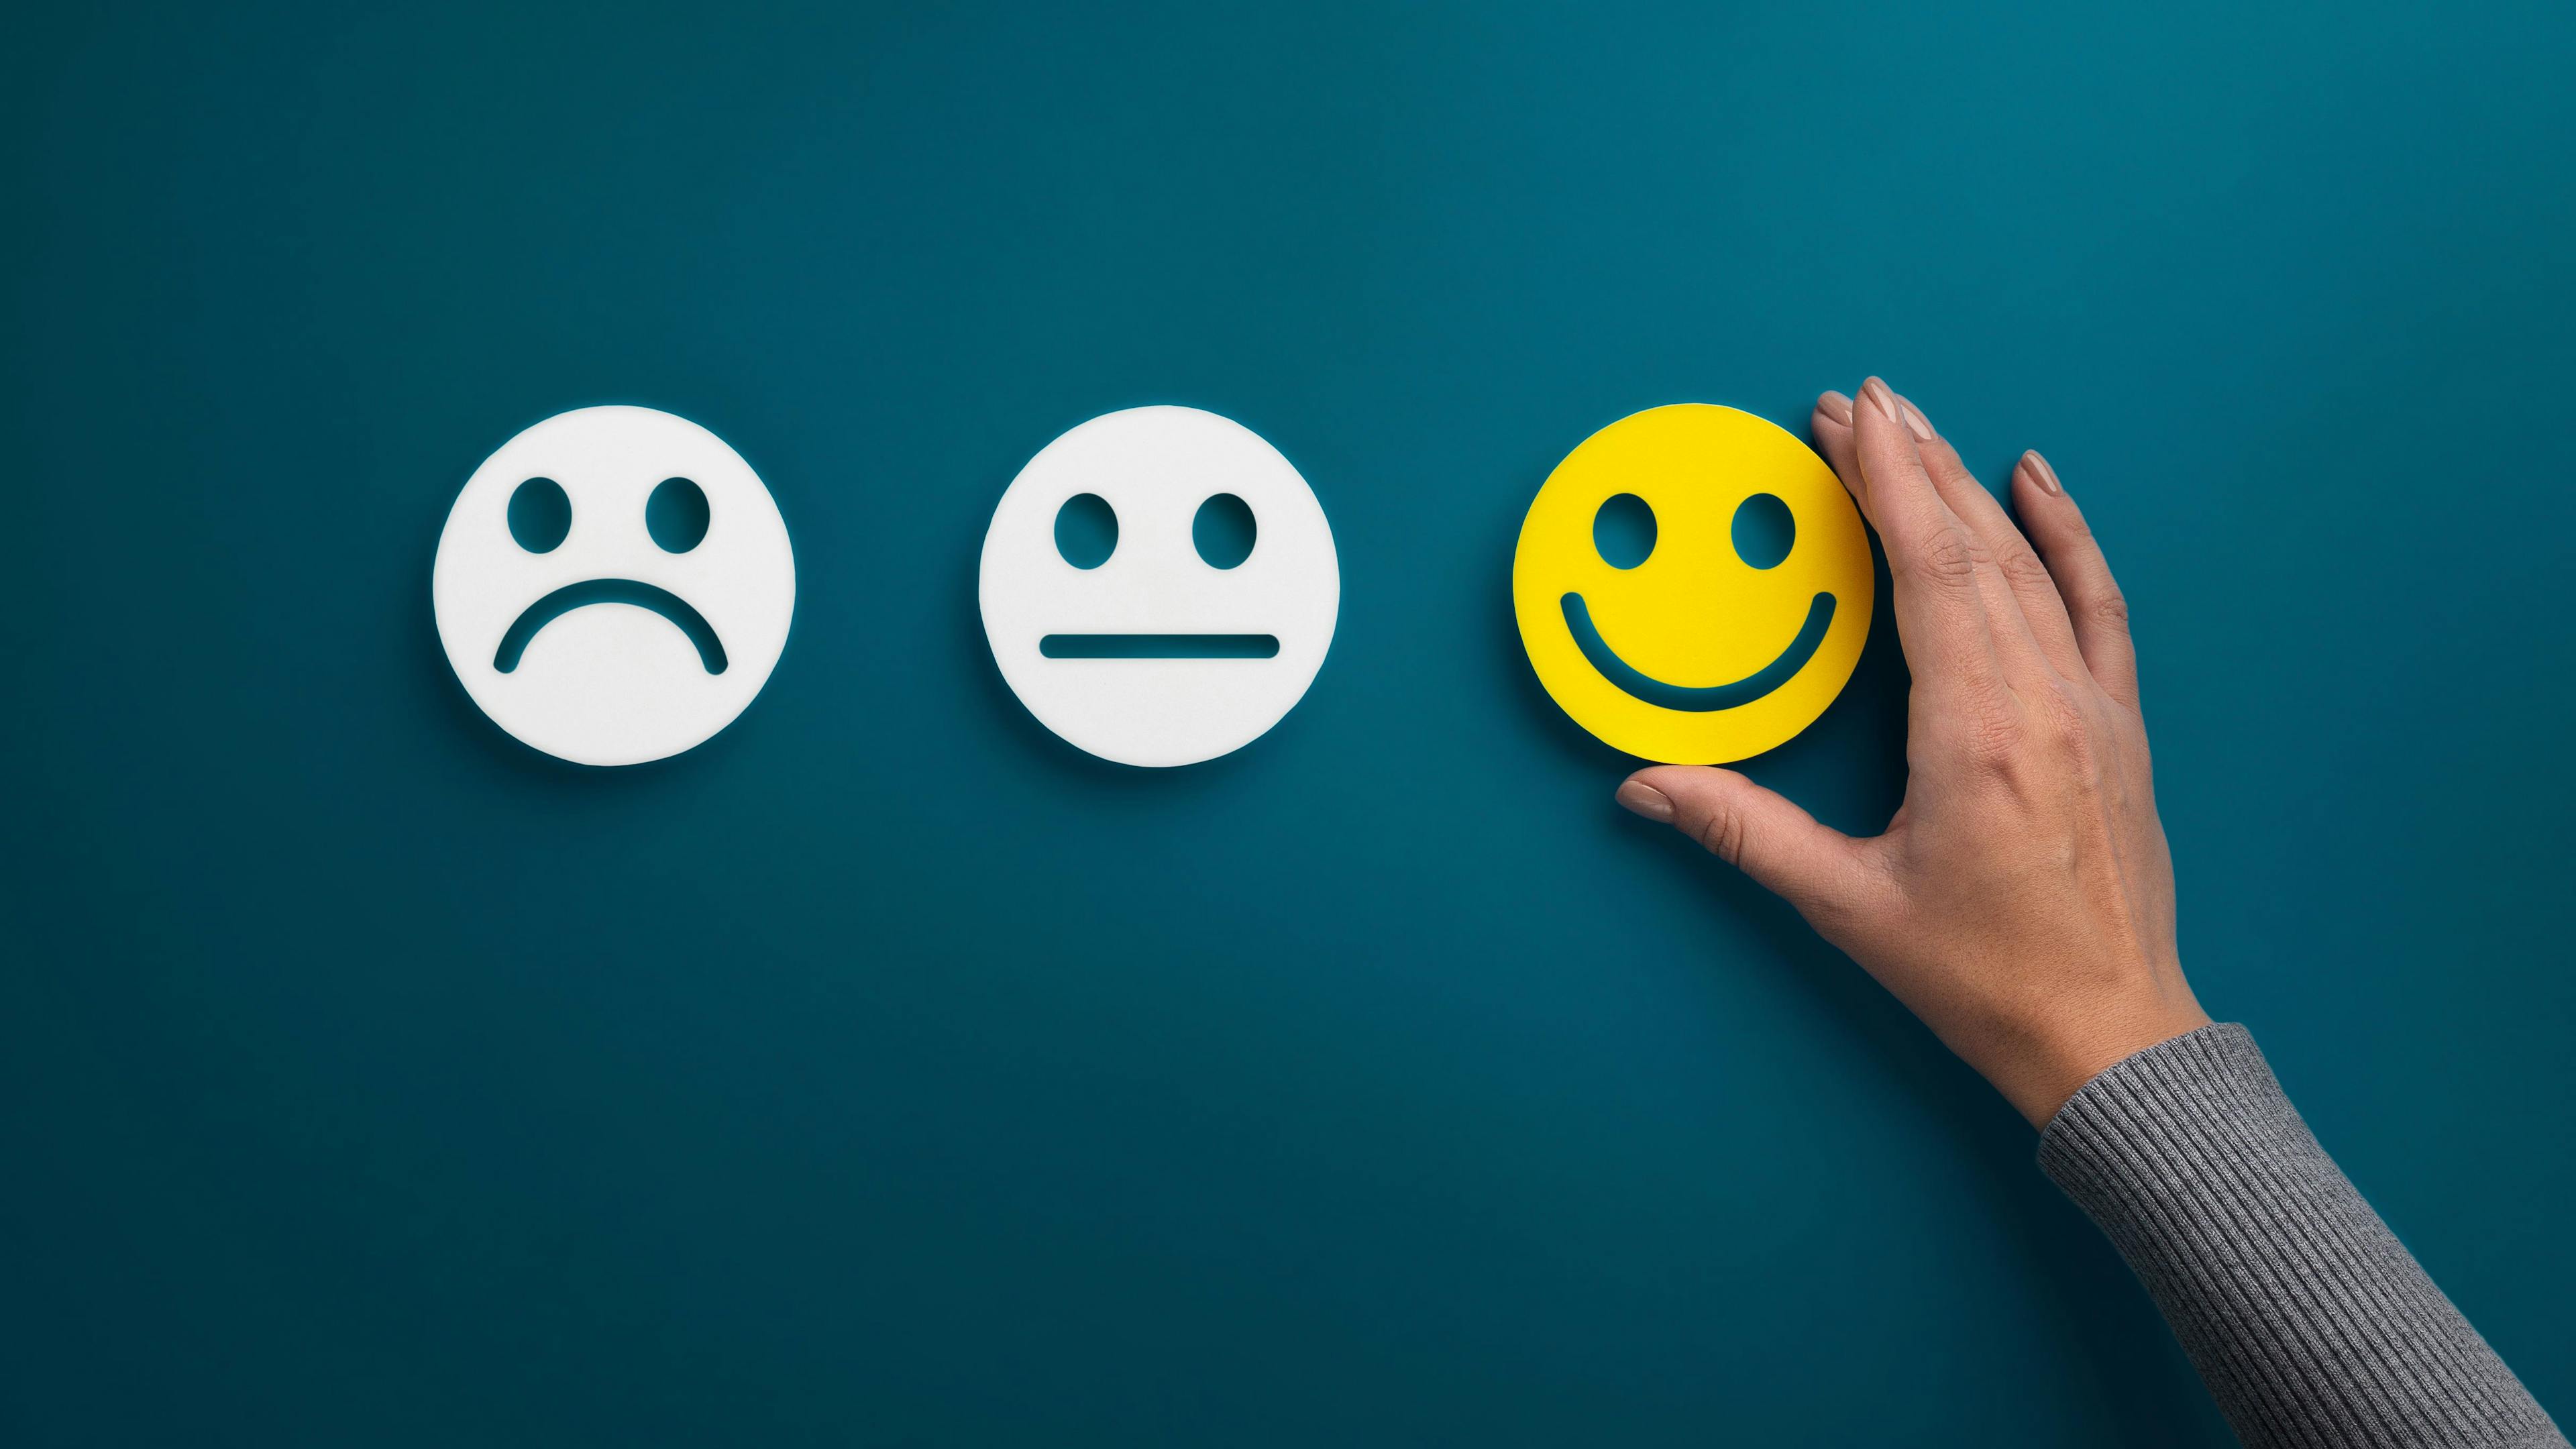 Three emojis: two white sad emojis, and a smiling emoji